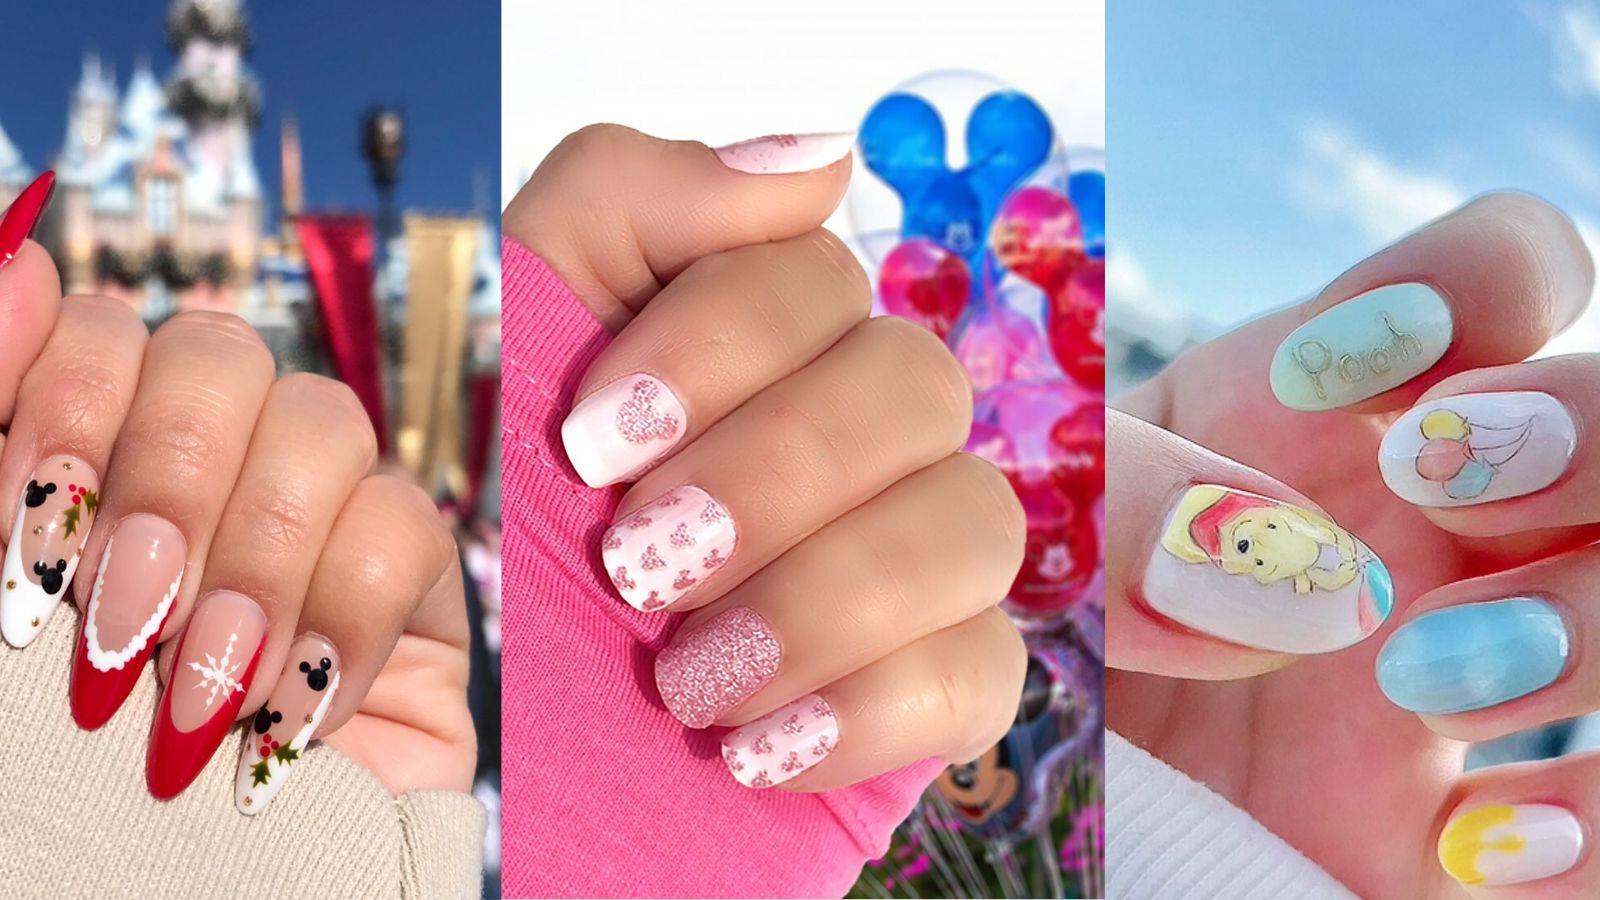 Disney Nails and Disney Nail Colors